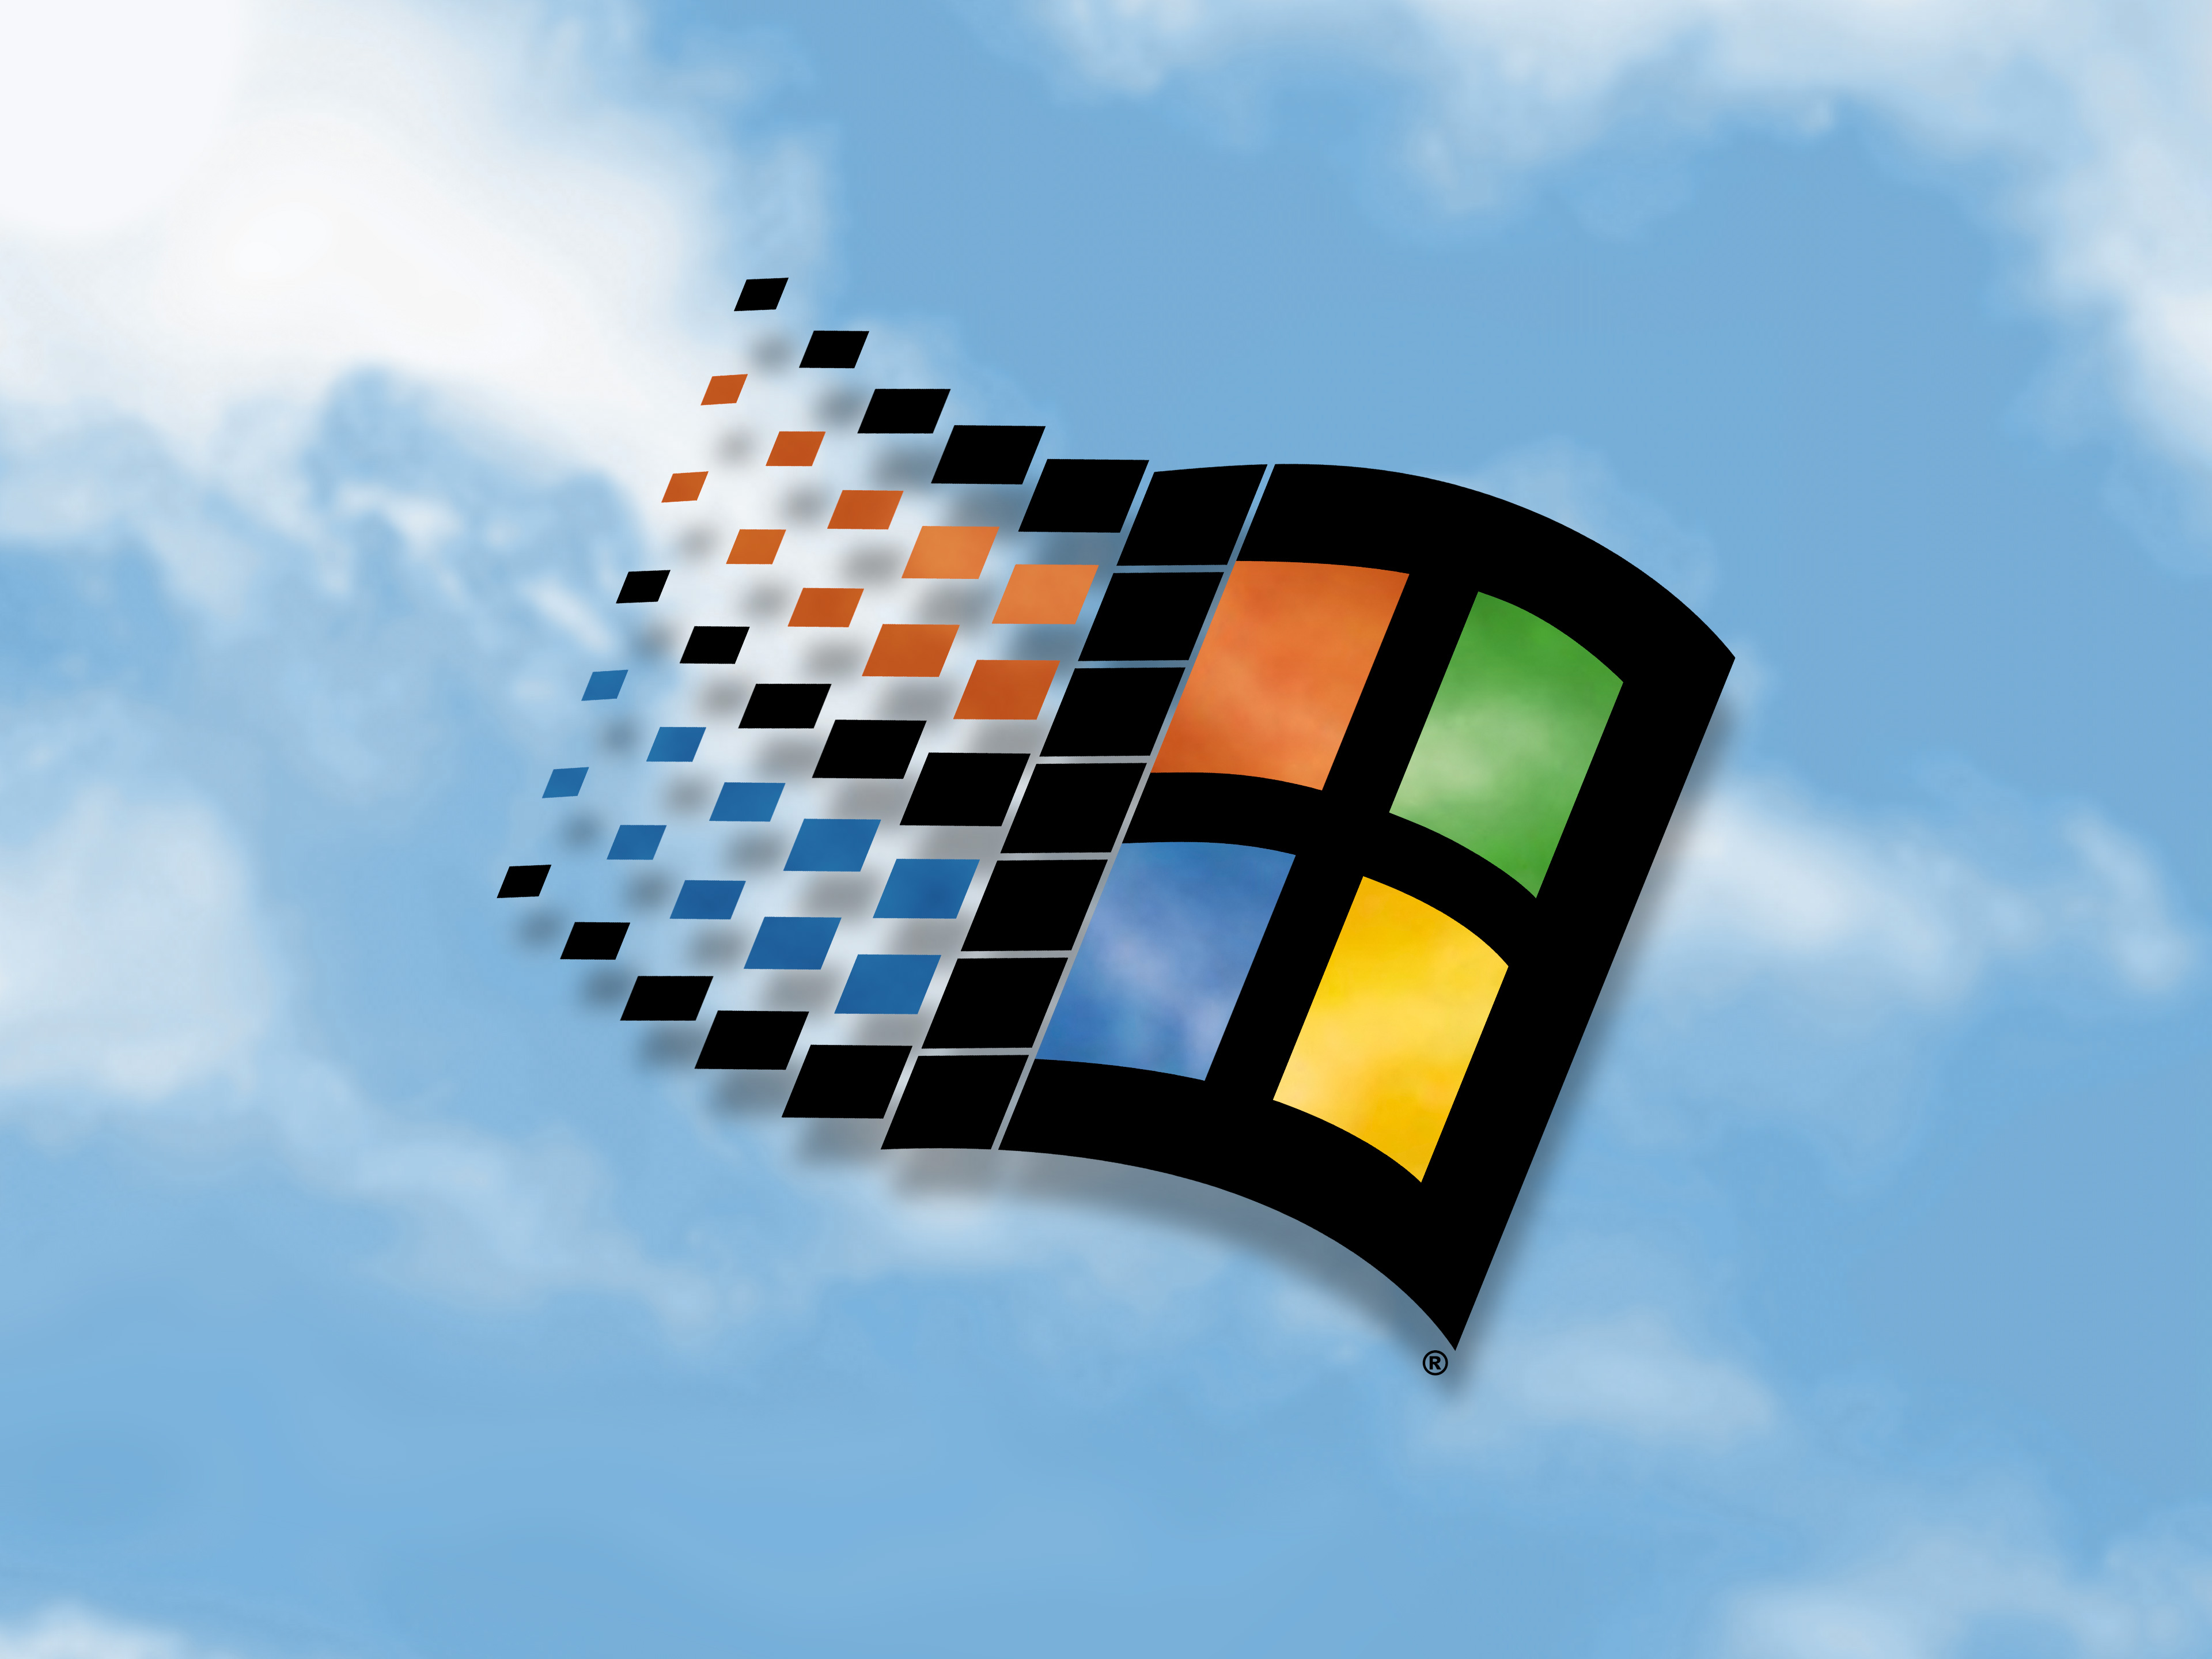 Windows 98 wallpapers đang trở lại mạnh mẽ hơn bao giờ hết. Với những hình ảnh cổ điển độc đáo này, bạn sẽ có được một trải nghiệm mới mẻ khi sử dụng máy tính của mình.